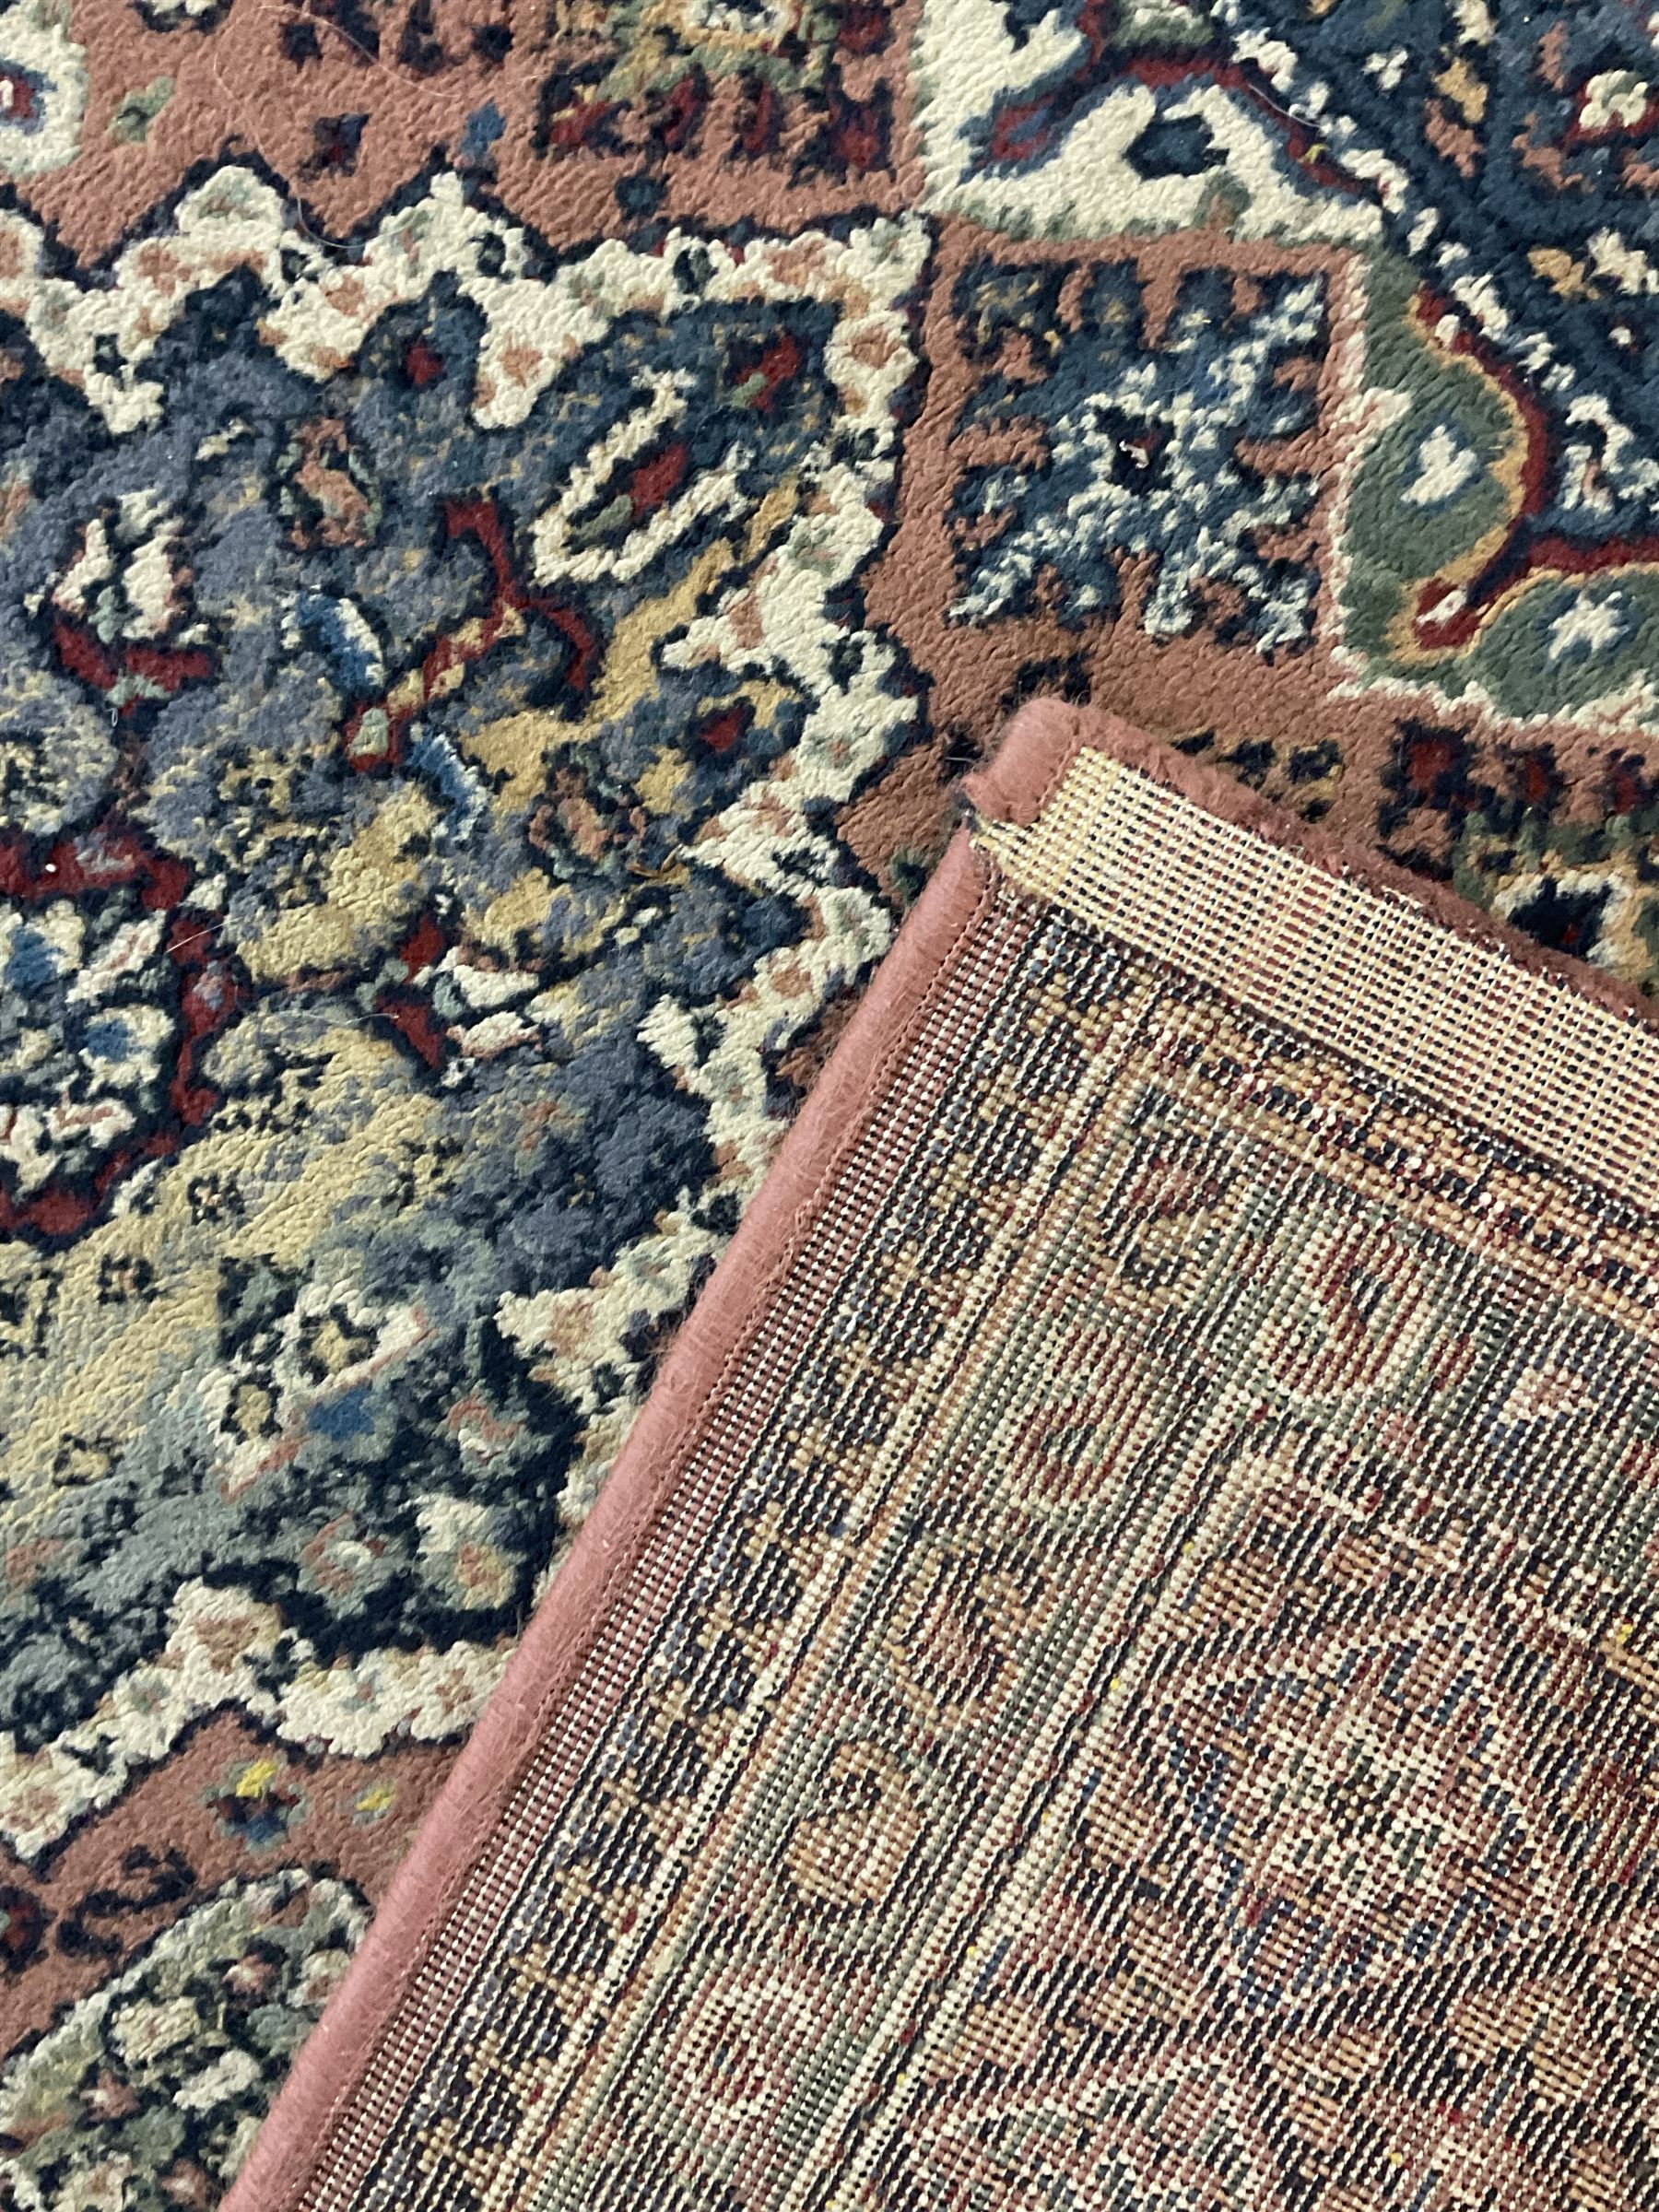 Persian design peach ground rug (169cm x 117cm); Chinese peach ground rug (187cm x 101cm) - Image 9 of 9